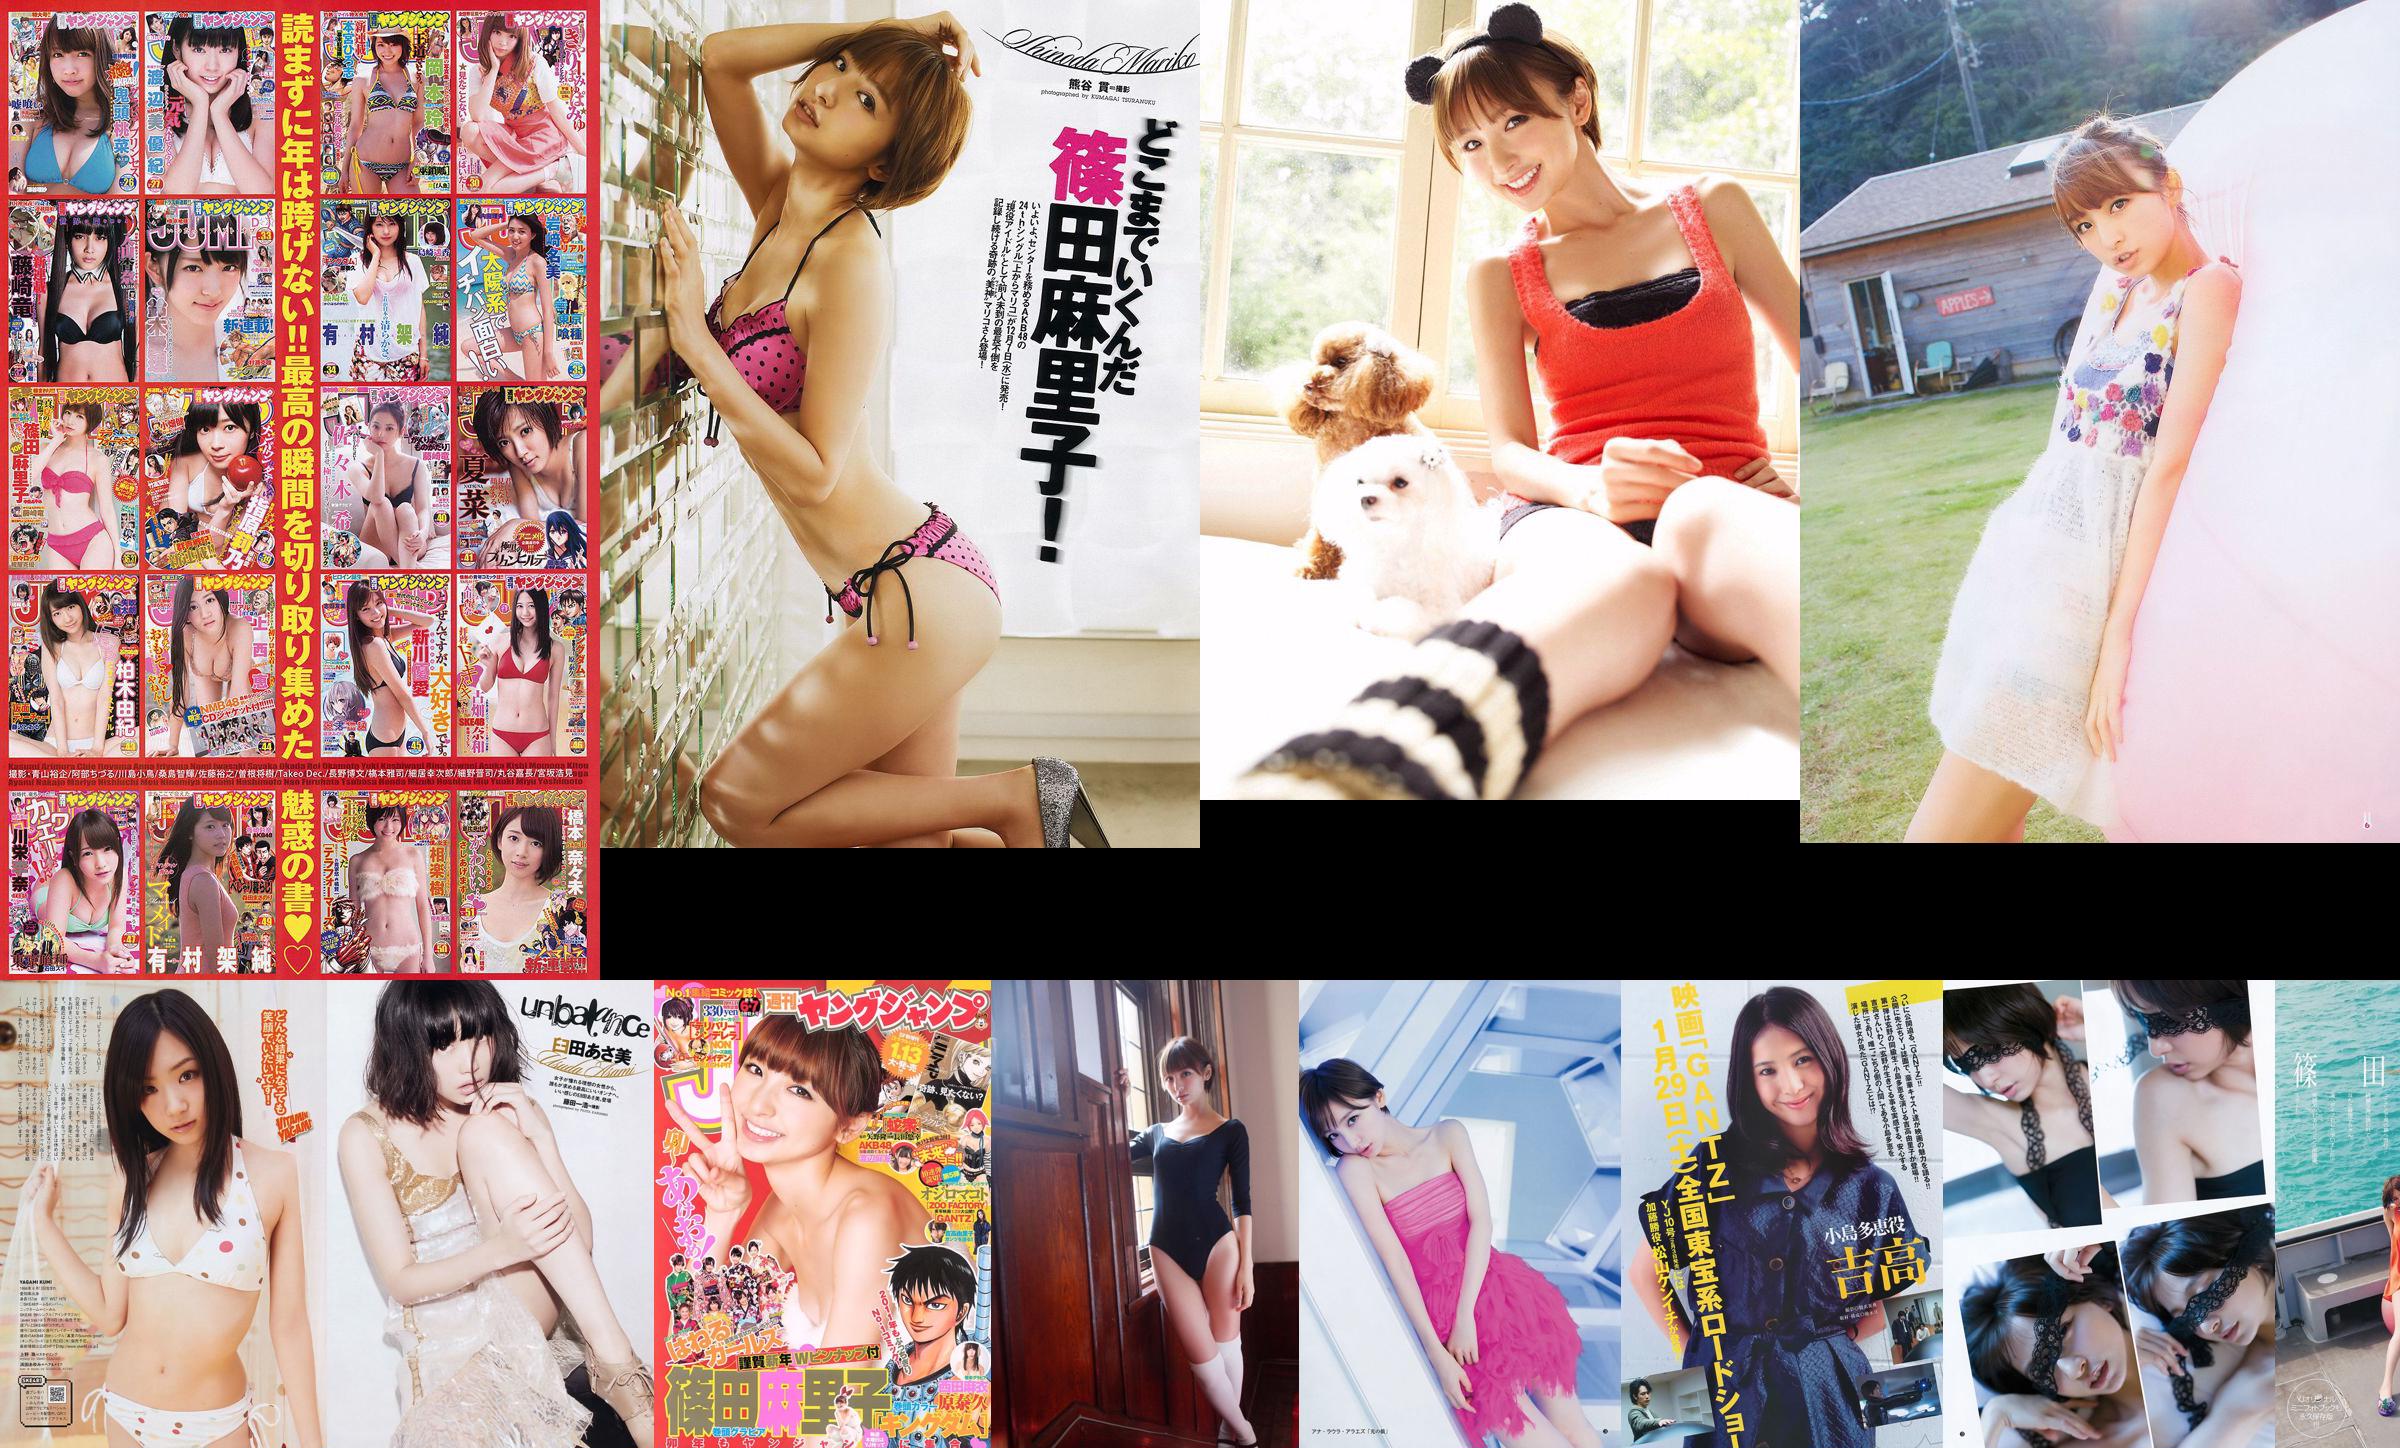 Mariko Shinoda Sakidol Ace Tournament [Tygodniowy młody skok] 2014 nr 44 Zdjęcie Mori No.68cdfd Strona 1